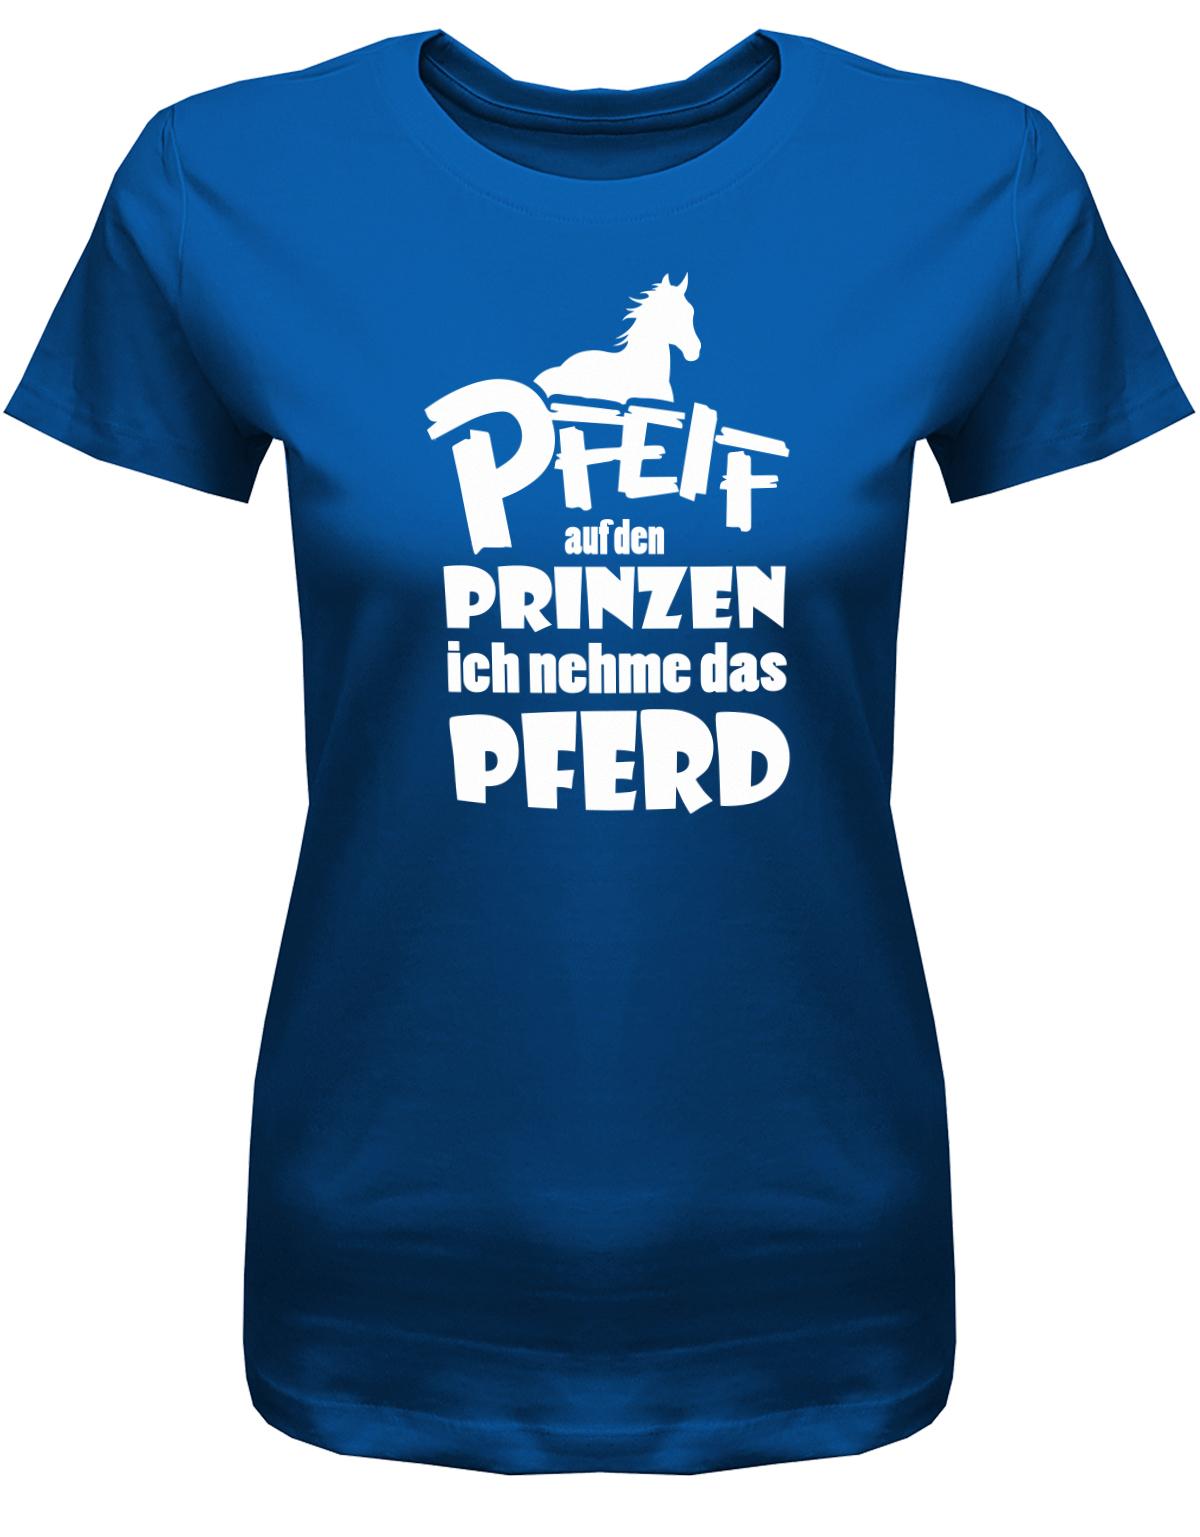 PFeiff-auf-den-Prinzen-ich-nehme-das-Pferd-Damen-Shirt-Royalblau